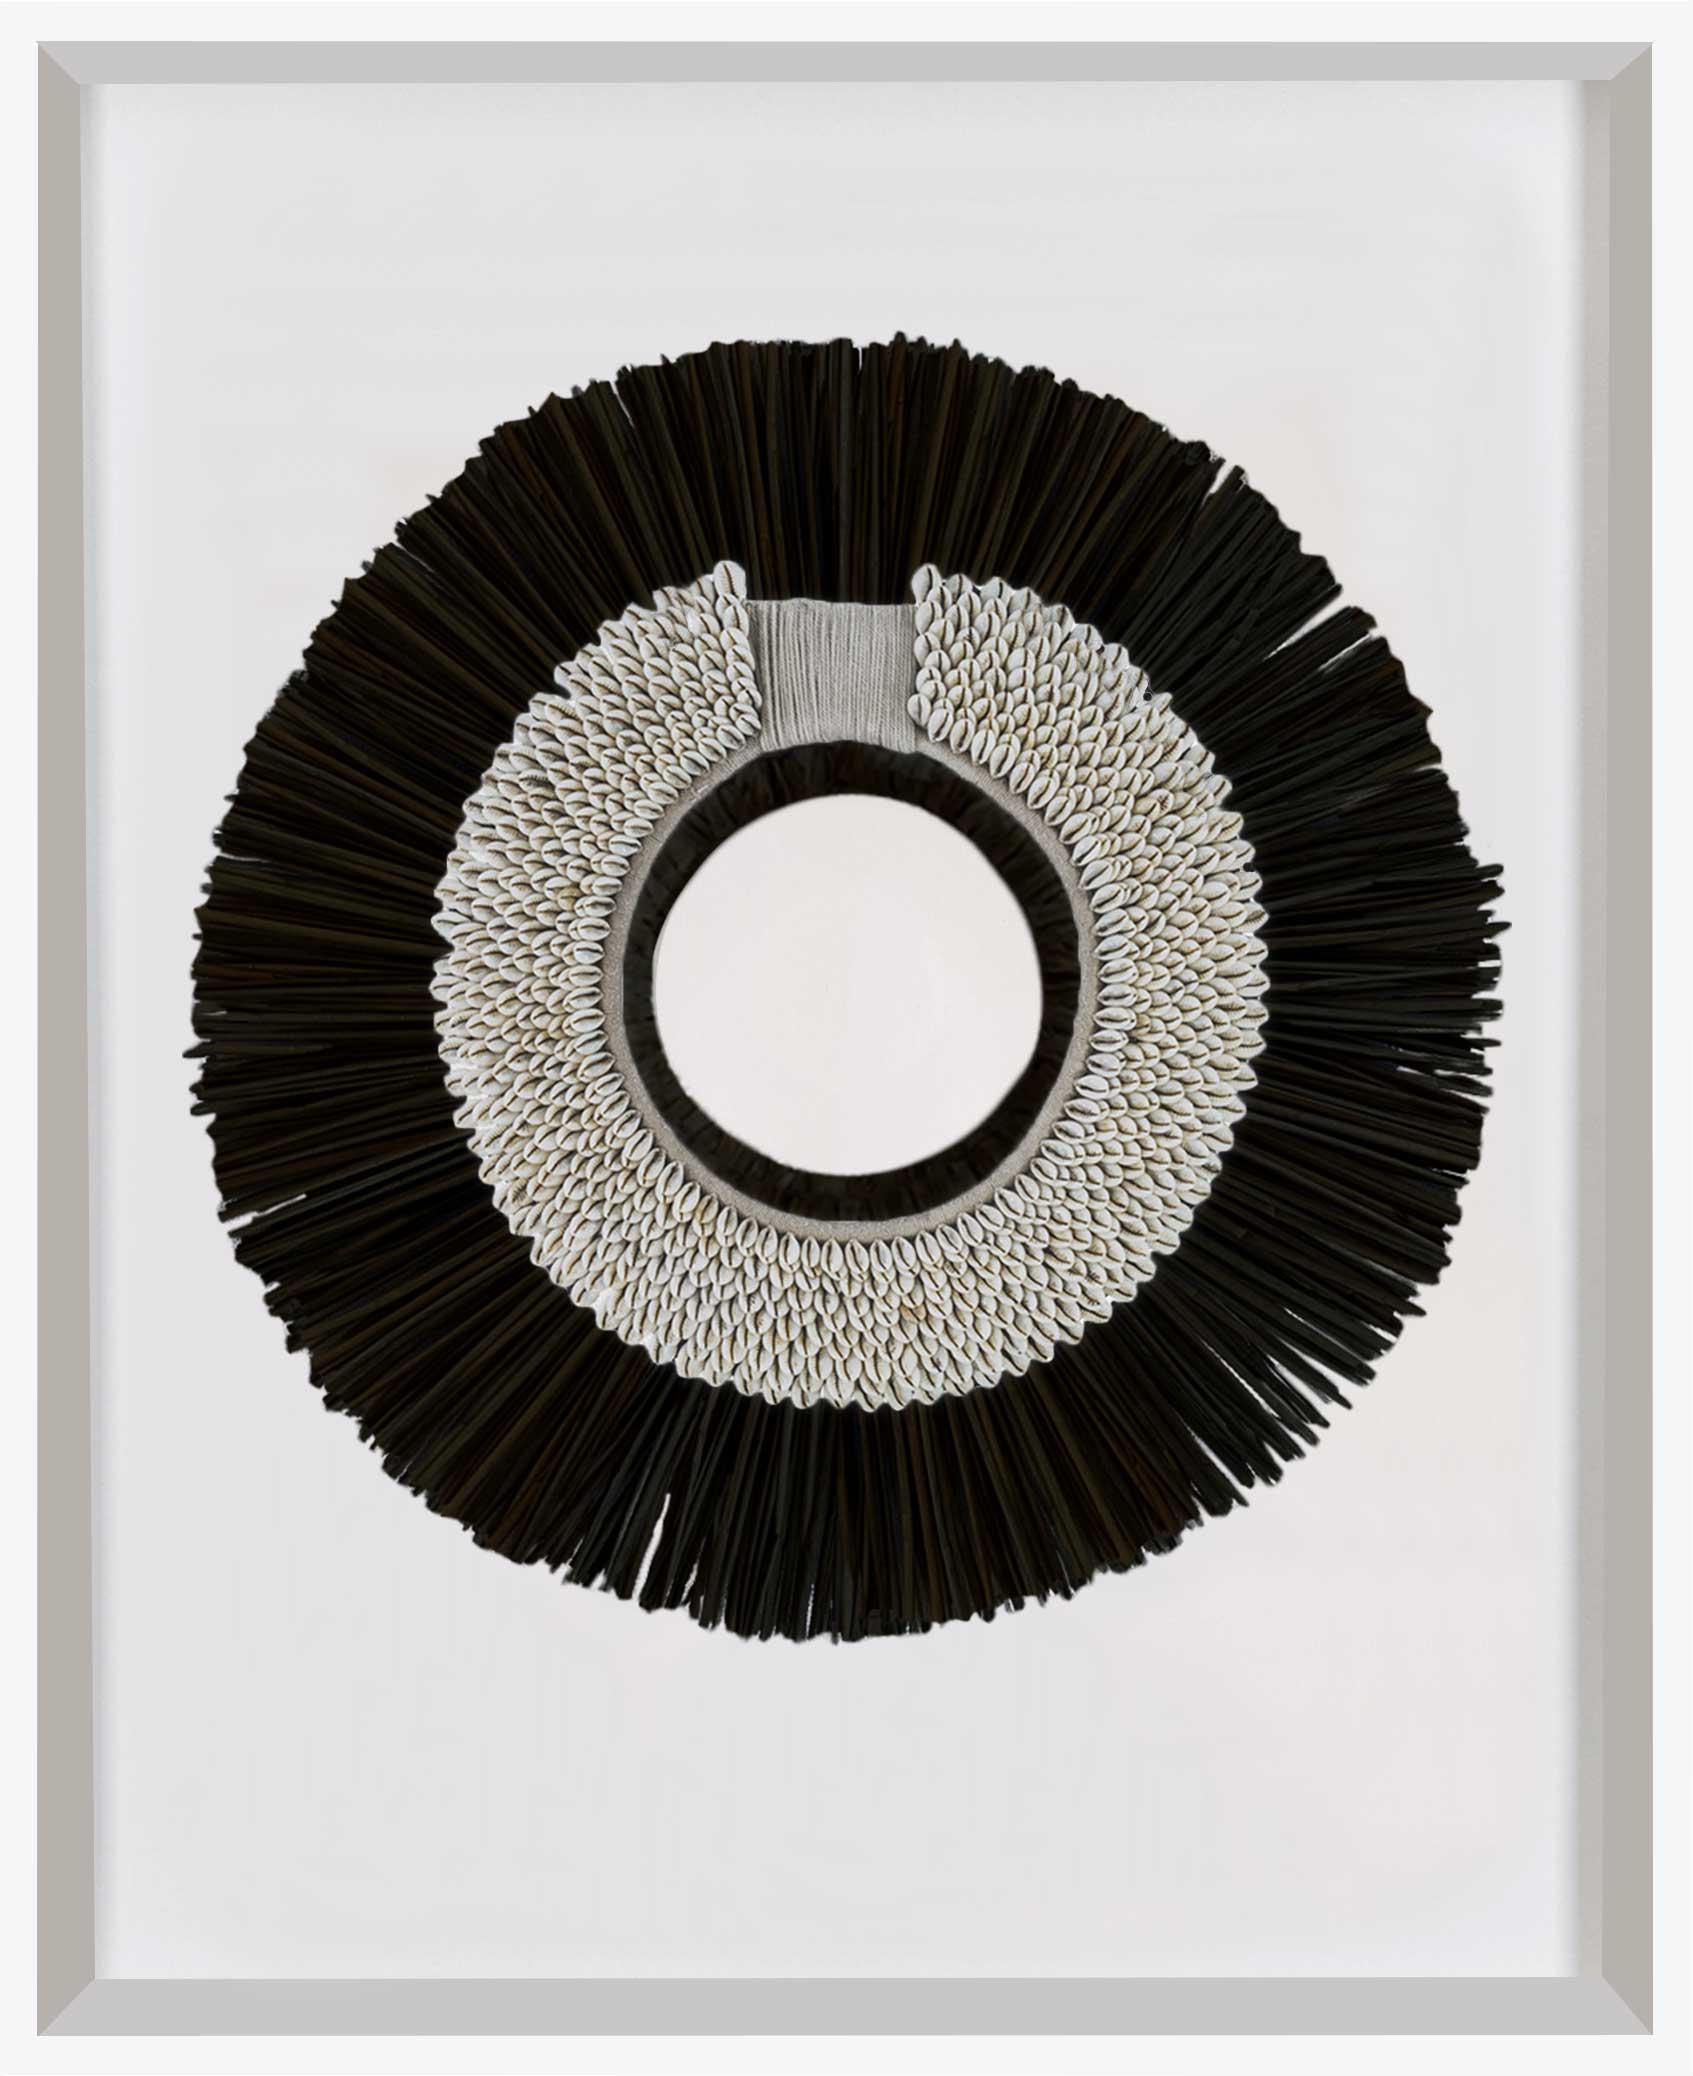 Bandhini Homewear Design Artwork White Frame / 67 x 85 cm African Shell Ring White & Grass Mat Black on White Artwork 67 x 85 cm